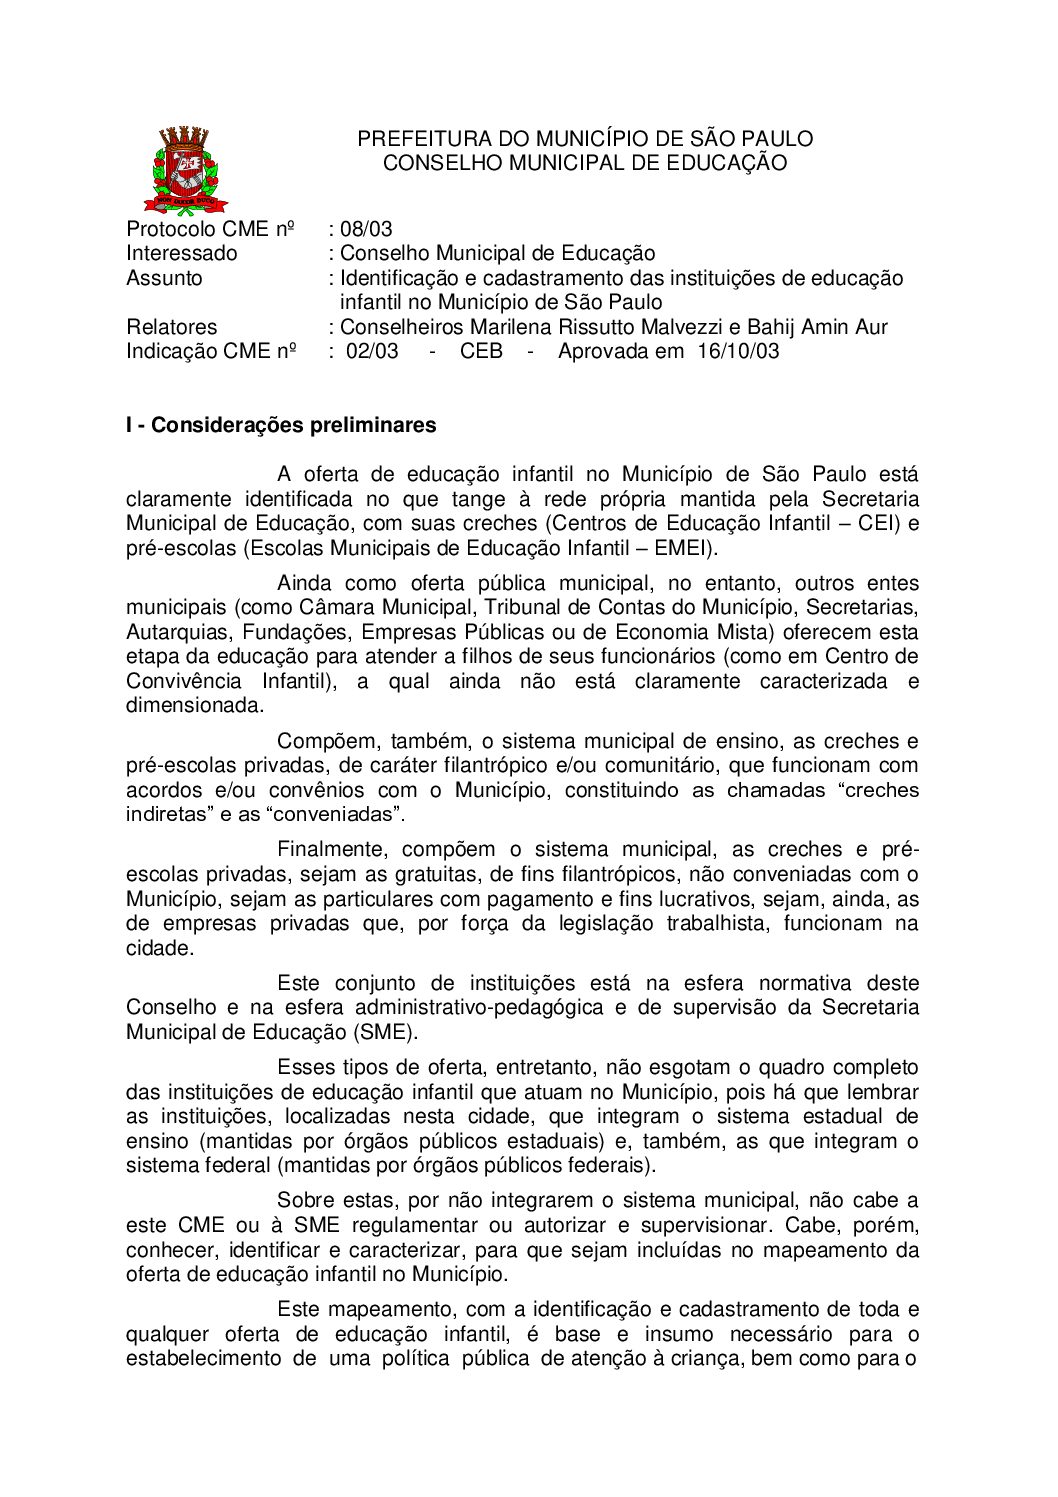 Indicação CME nº 02/2003 - Identificação e cadastramento das instituições de educação infantil no Município de São Paulo